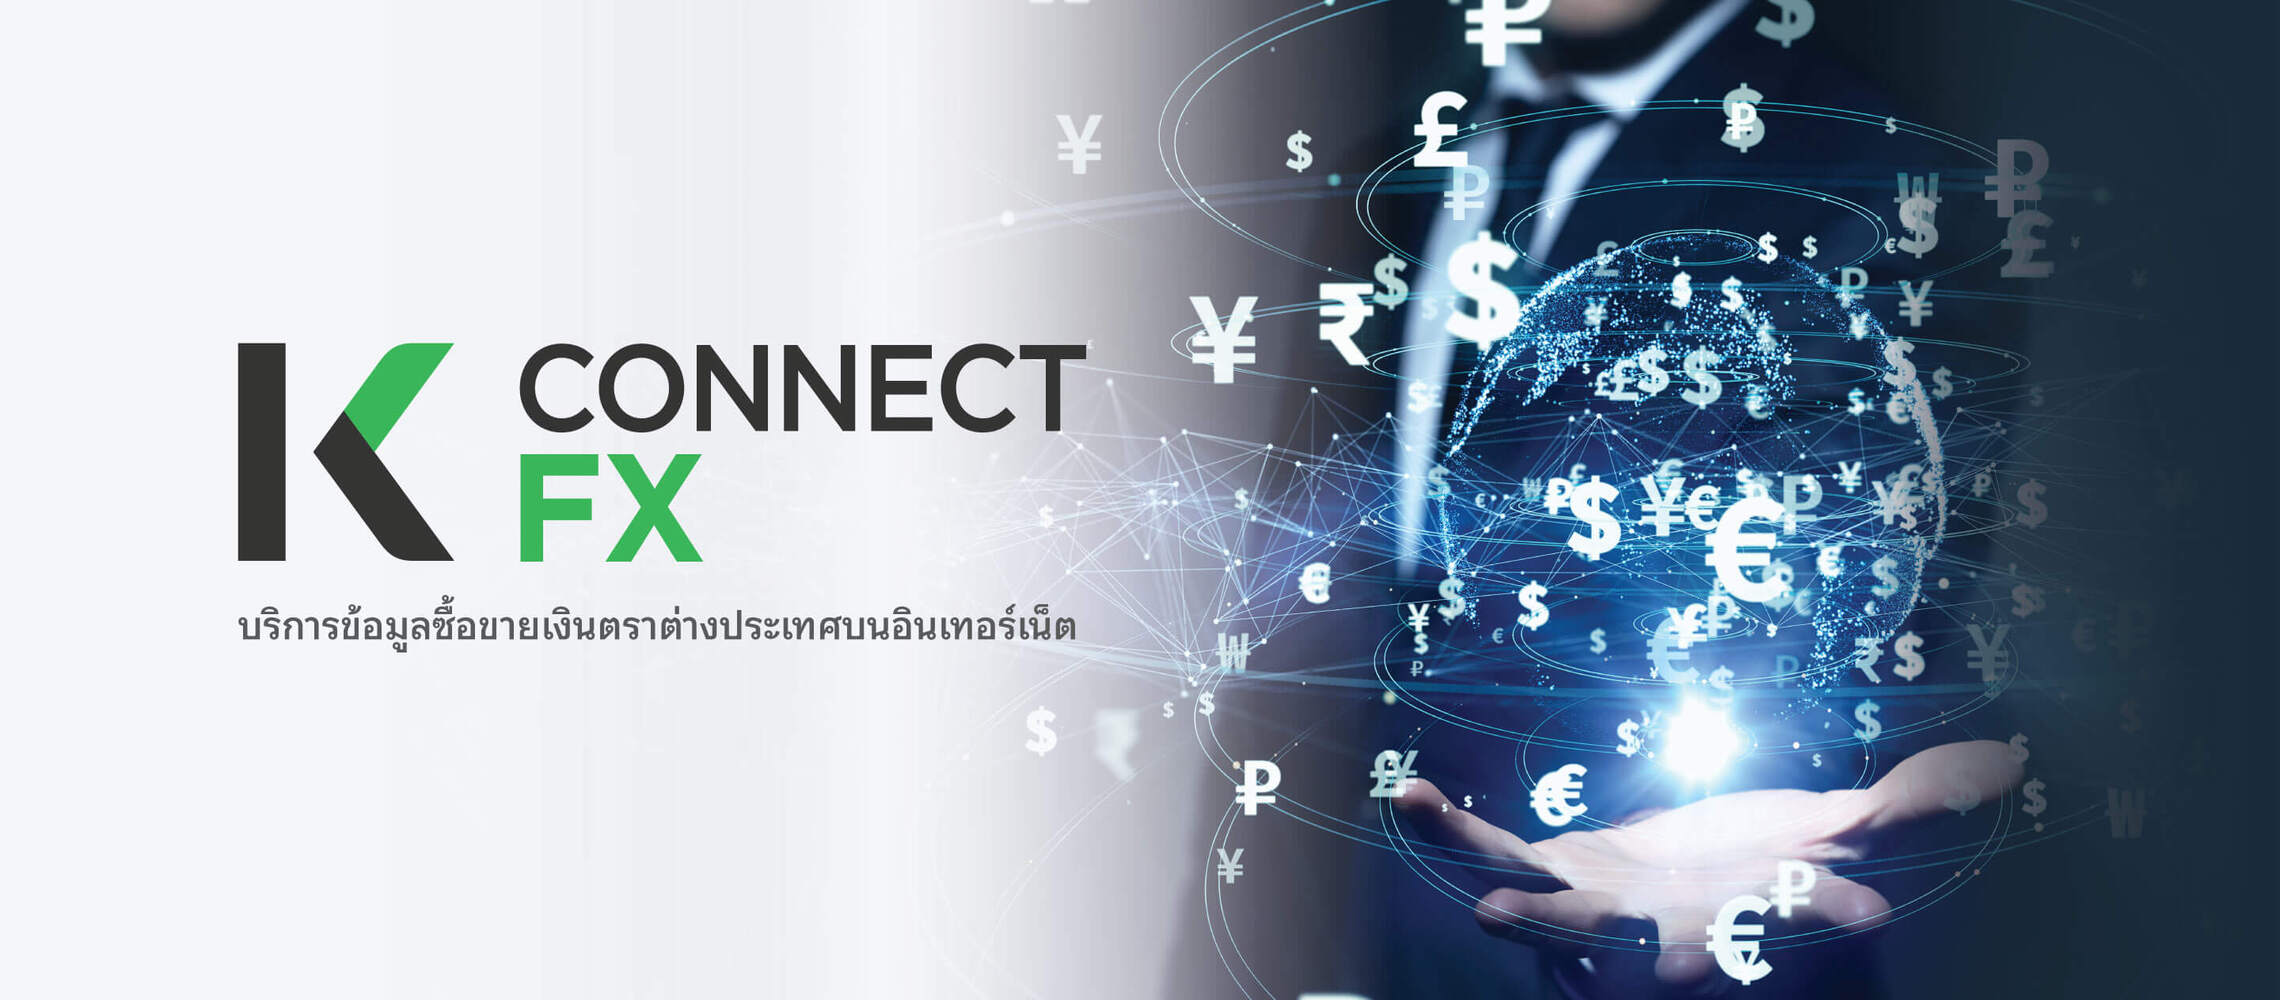 K CONNECT-FX บริการข้อมูลซื้อขายเงินตราต่างประเทศบน อินเตอร์เน็ต